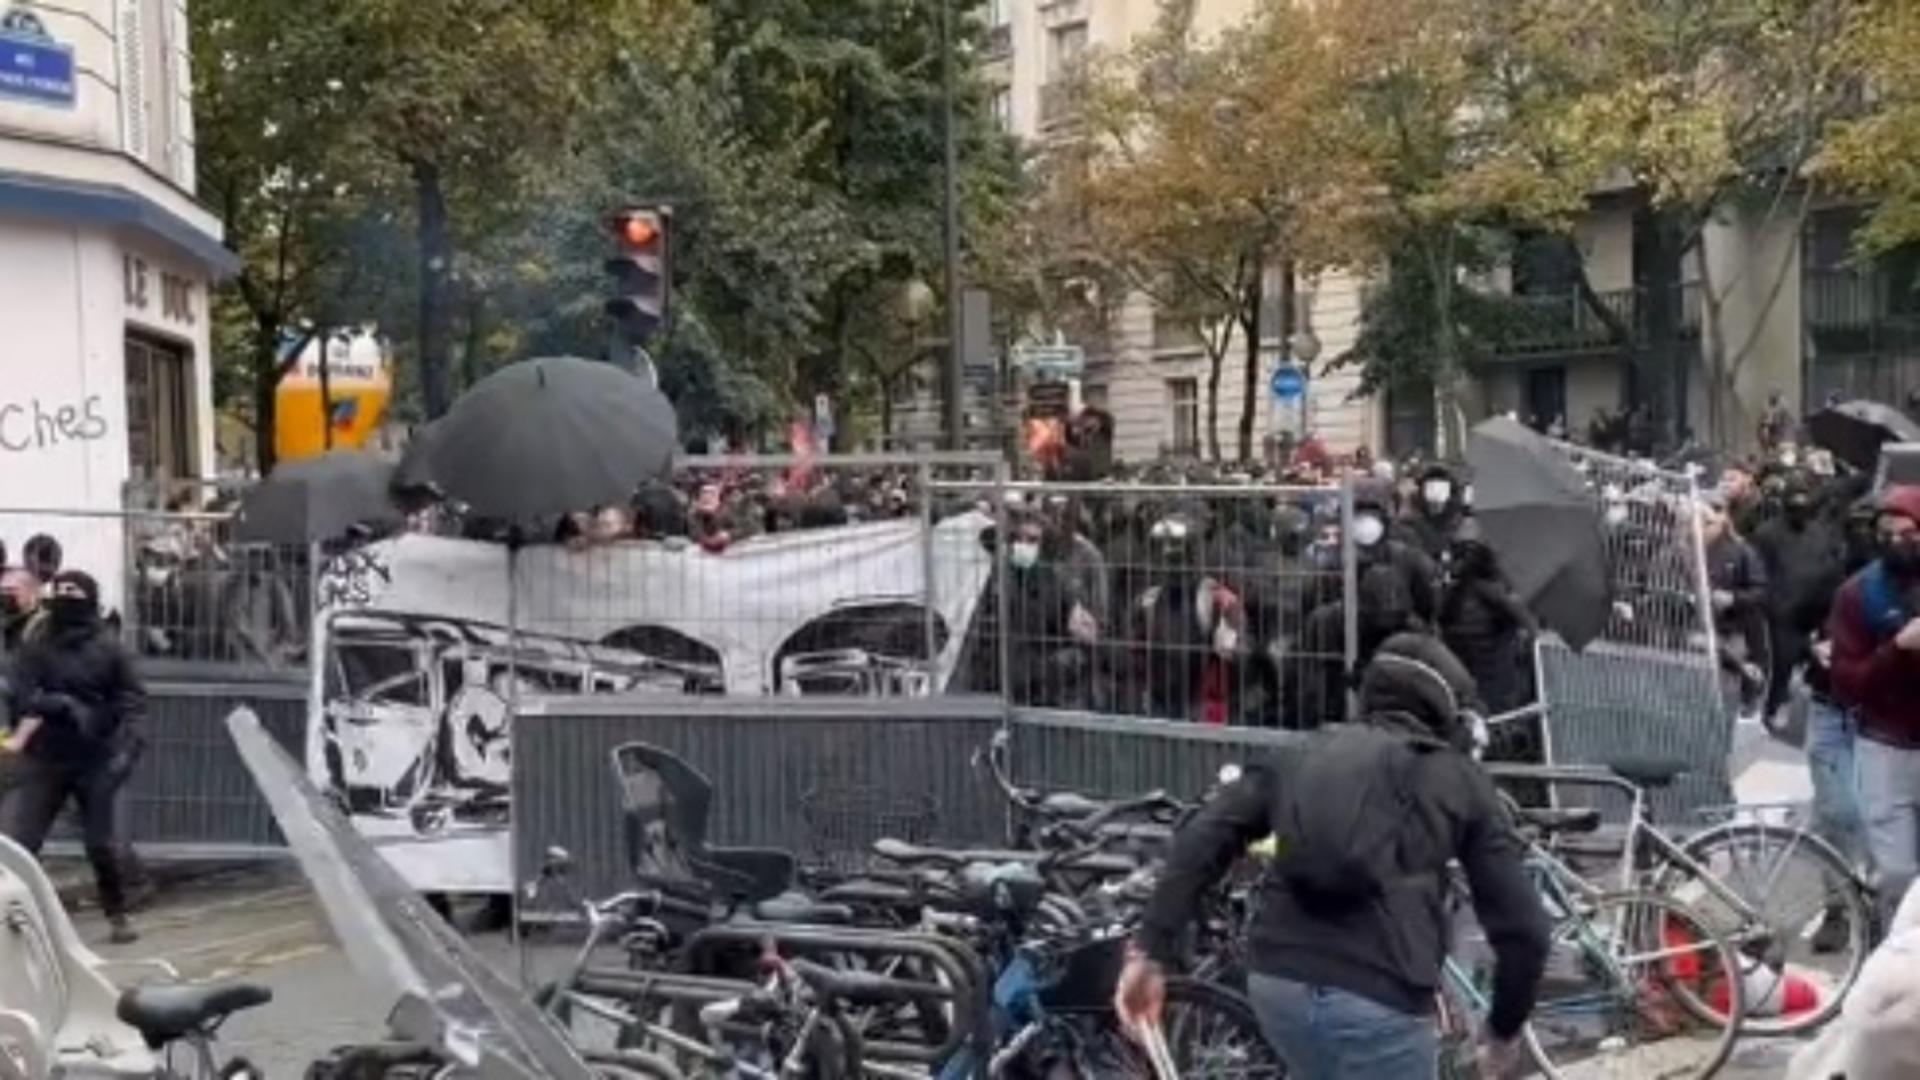 Tensiune socială în Franța: FURIE socială maximă! Mii de oameni scandează în centrul Parisului față de creșterea prețurilor și a scăderii nivelului de trai